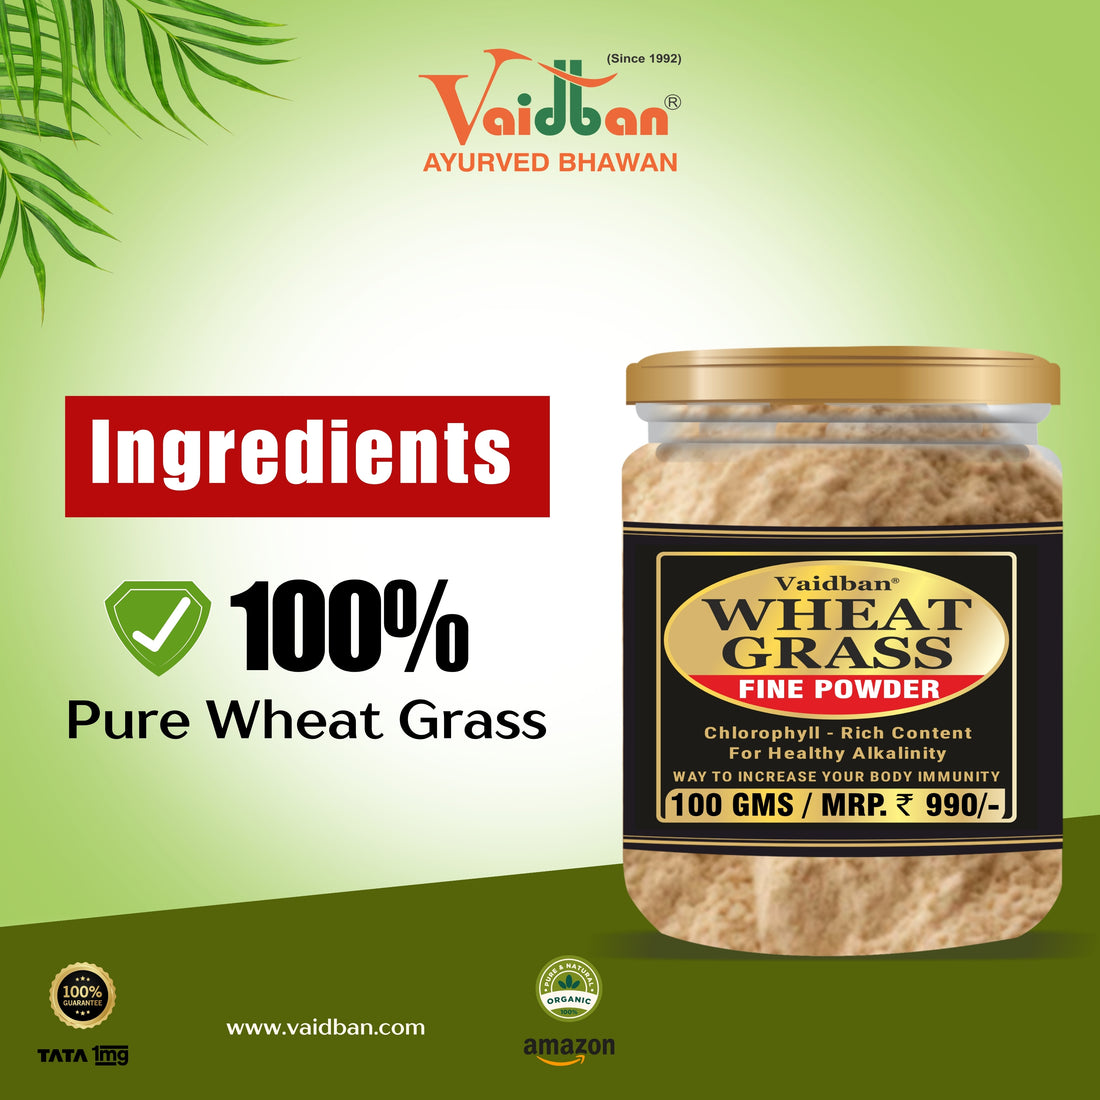 Vaidban Wheat Grass Fine Powder - Chlorophyll-Rich Superfood for Digestive Health & Immunity Boost